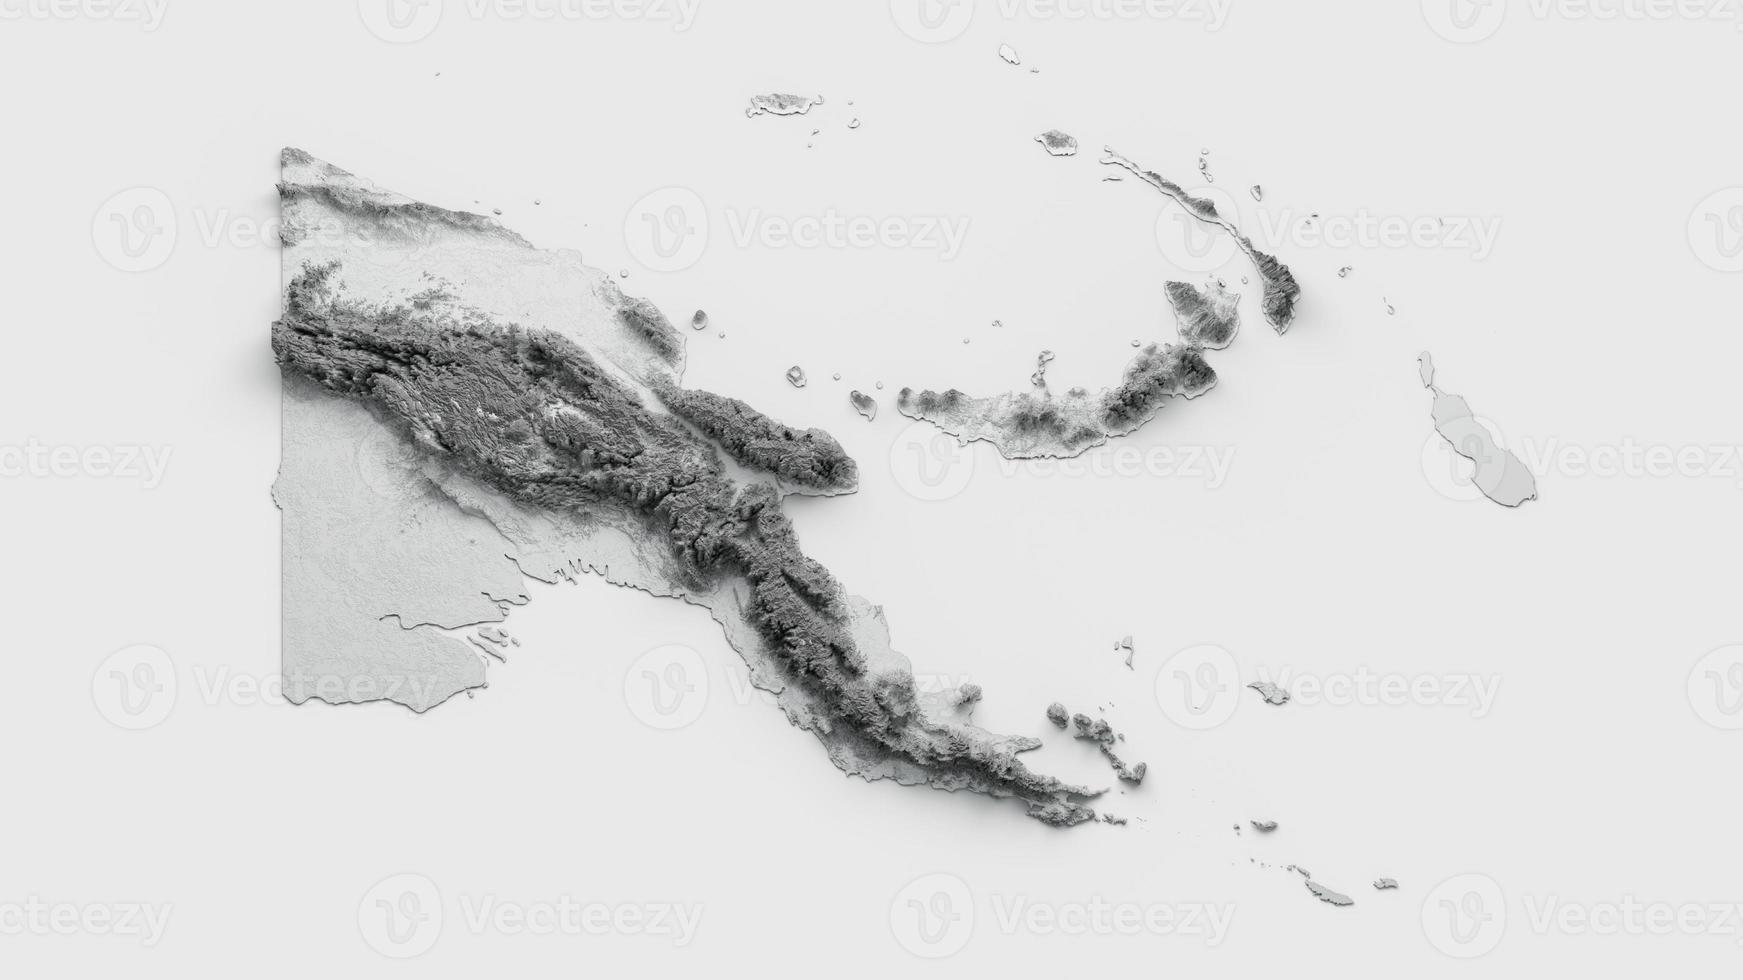 papua nueva guinea mapa bandera sombreado relieve color altura mapa sobre fondo blanco 3d ilustración foto